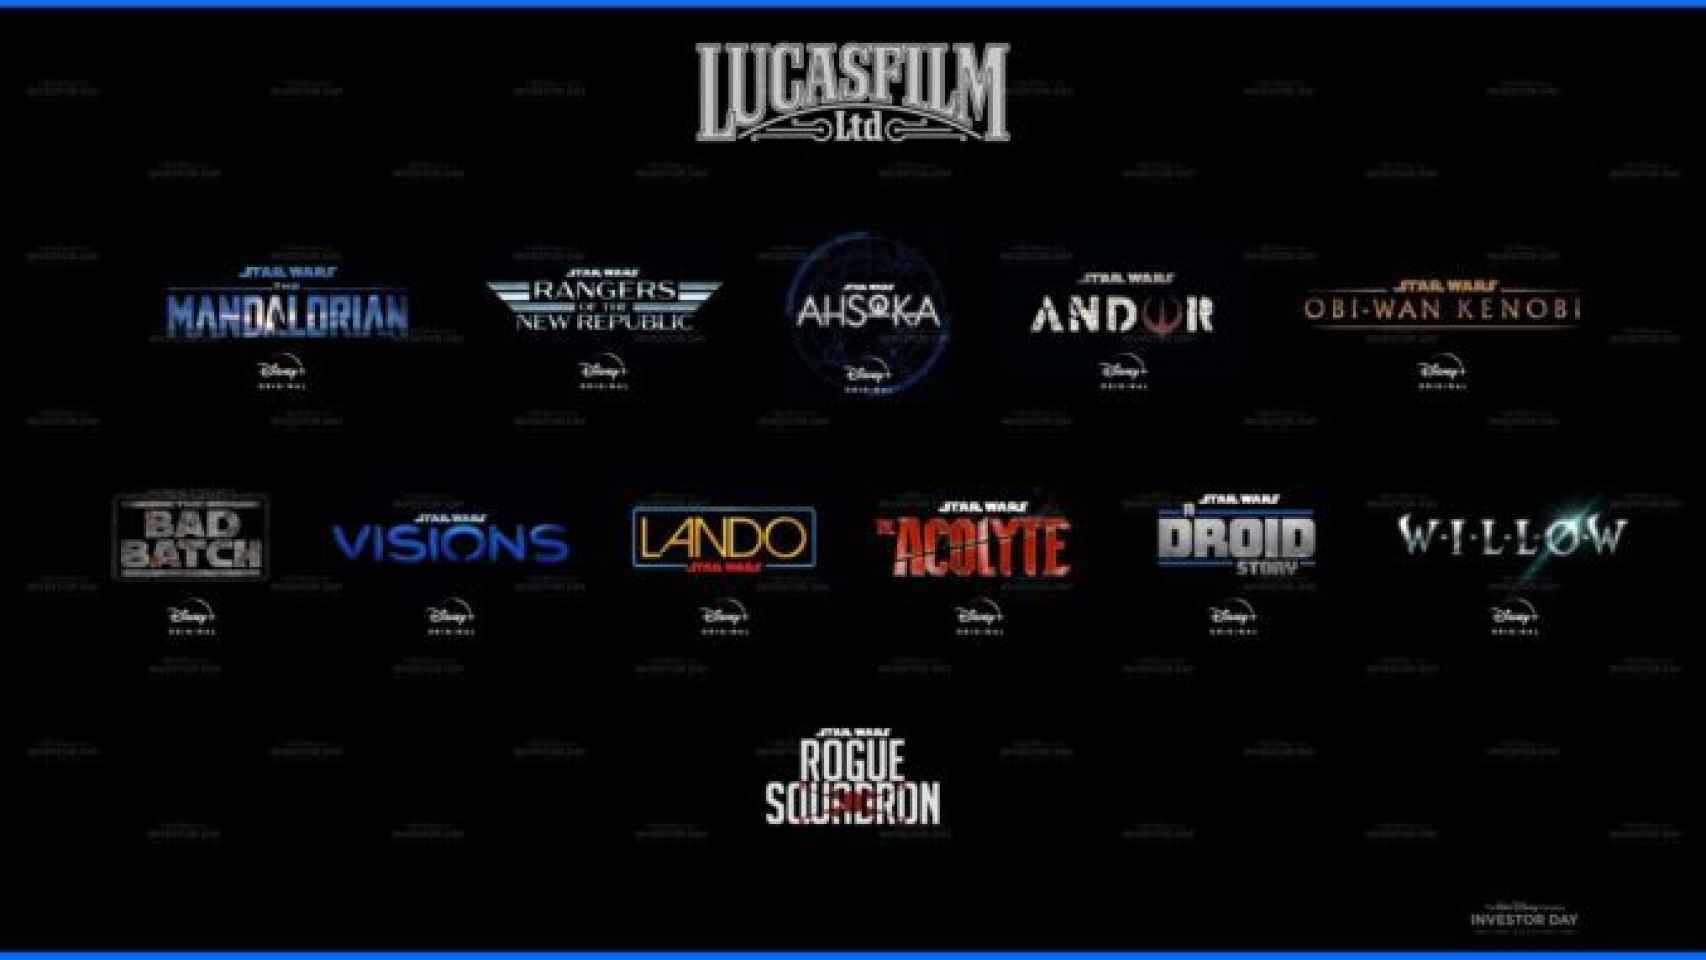 Cuadrante de todos los estrenos de Star Wars y Lucasfilms